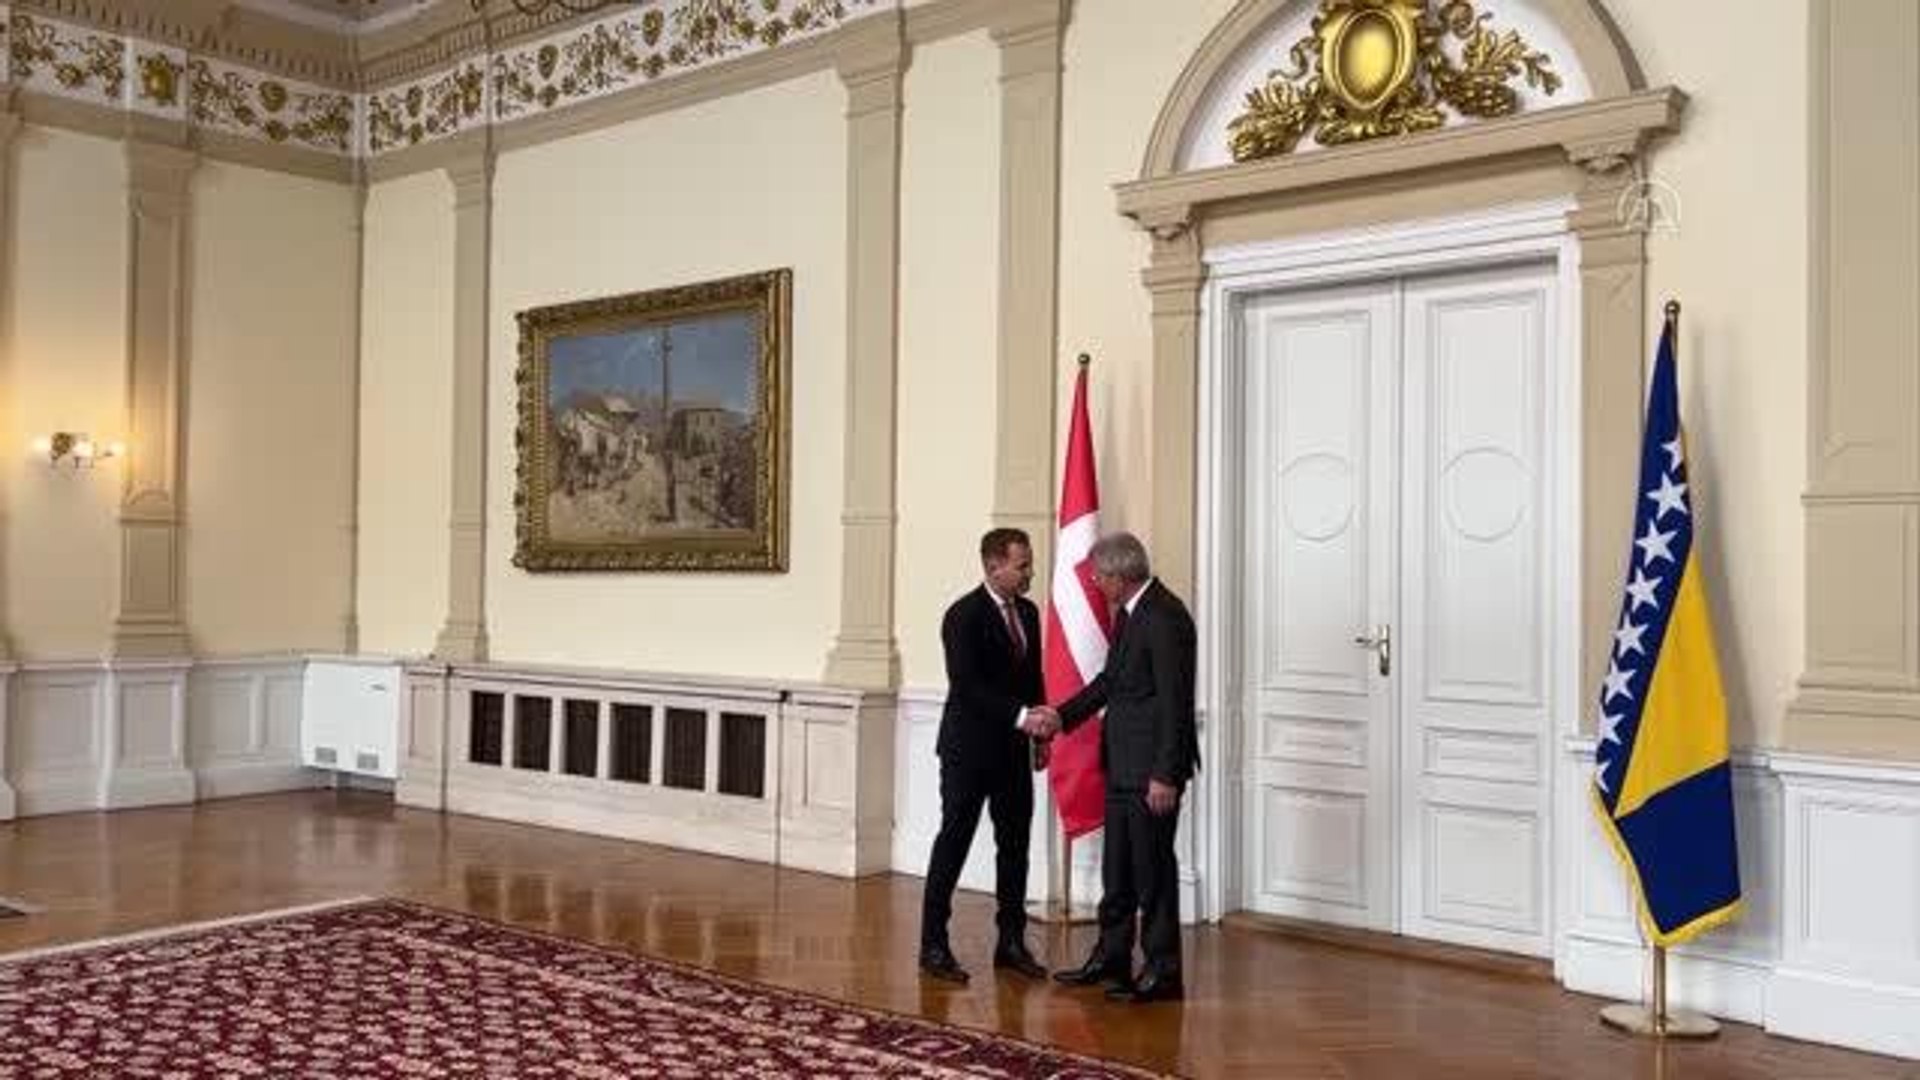 SARAYBOSNA - Danimarka Dışişleri Bakanı Kofod, Bosna Hersek Dışişleri  Bakanı Turkovic ile görüştü - Dailymotion Video